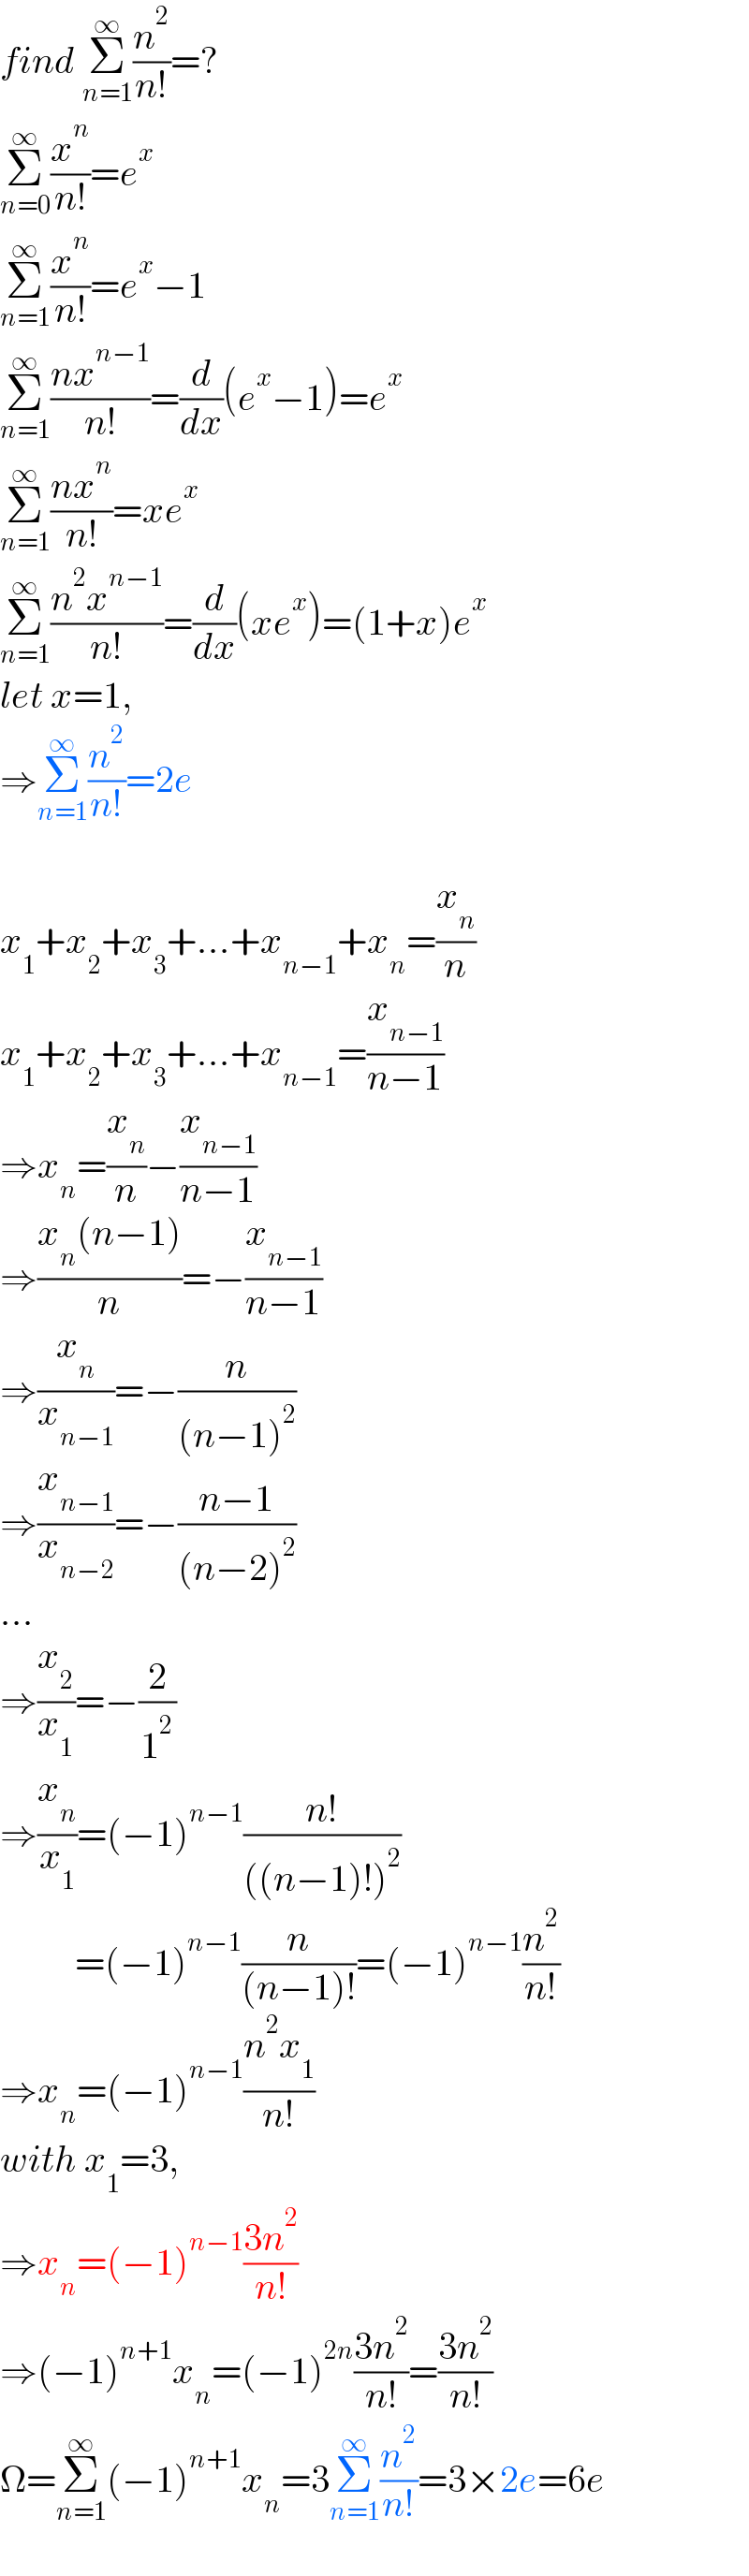 find Σ_(n=1) ^∞ (n^2 /(n!))=?  Σ_(n=0) ^∞ (x^n /(n!))=e^x   Σ_(n=1) ^∞ (x^n /(n!))=e^x −1  Σ_(n=1) ^∞ ((nx^(n−1) )/(n!))=(d/dx)(e^x −1)=e^x   Σ_(n=1) ^∞ ((nx^n )/(n!))=xe^x   Σ_(n=1) ^∞ ((n^2 x^(n−1) )/(n!))=(d/dx)(xe^x )=(1+x)e^x   let x=1,  ⇒Σ_(n=1) ^∞ (n^2 /(n!))=2e    x_1 +x_2 +x_3 +...+x_(n−1) +x_n =(x_n /n)  x_1 +x_2 +x_3 +...+x_(n−1) =(x_(n−1) /(n−1))  ⇒x_n =(x_n /n)−(x_(n−1) /(n−1))  ⇒((x_n (n−1))/n)=−(x_(n−1) /(n−1))  ⇒(x_n /x_(n−1) )=−(n/((n−1)^2 ))  ⇒(x_(n−1) /x_(n−2) )=−((n−1)/((n−2)^2 ))  ...  ⇒(x_2 /x_1 )=−(2/1^2 )  ⇒(x_n /x_1 )=(−1)^(n−1) ((n!)/(((n−1)!)^2 ))            =(−1)^(n−1) (n/((n−1)!))=(−1)^(n−1) (n^2 /(n!))  ⇒x_n =(−1)^(n−1) ((n^2 x_1 )/(n!))  with x_1 =3,  ⇒x_n =(−1)^(n−1) ((3n^2 )/(n!))  ⇒(−1)^(n+1) x_n =(−1)^(2n) ((3n^2 )/(n!))=((3n^2 )/(n!))  Ω=Σ_(n=1) ^∞ (−1)^(n+1) x_n =3Σ_(n=1) ^∞ (n^2 /(n!))=3×2e=6e  